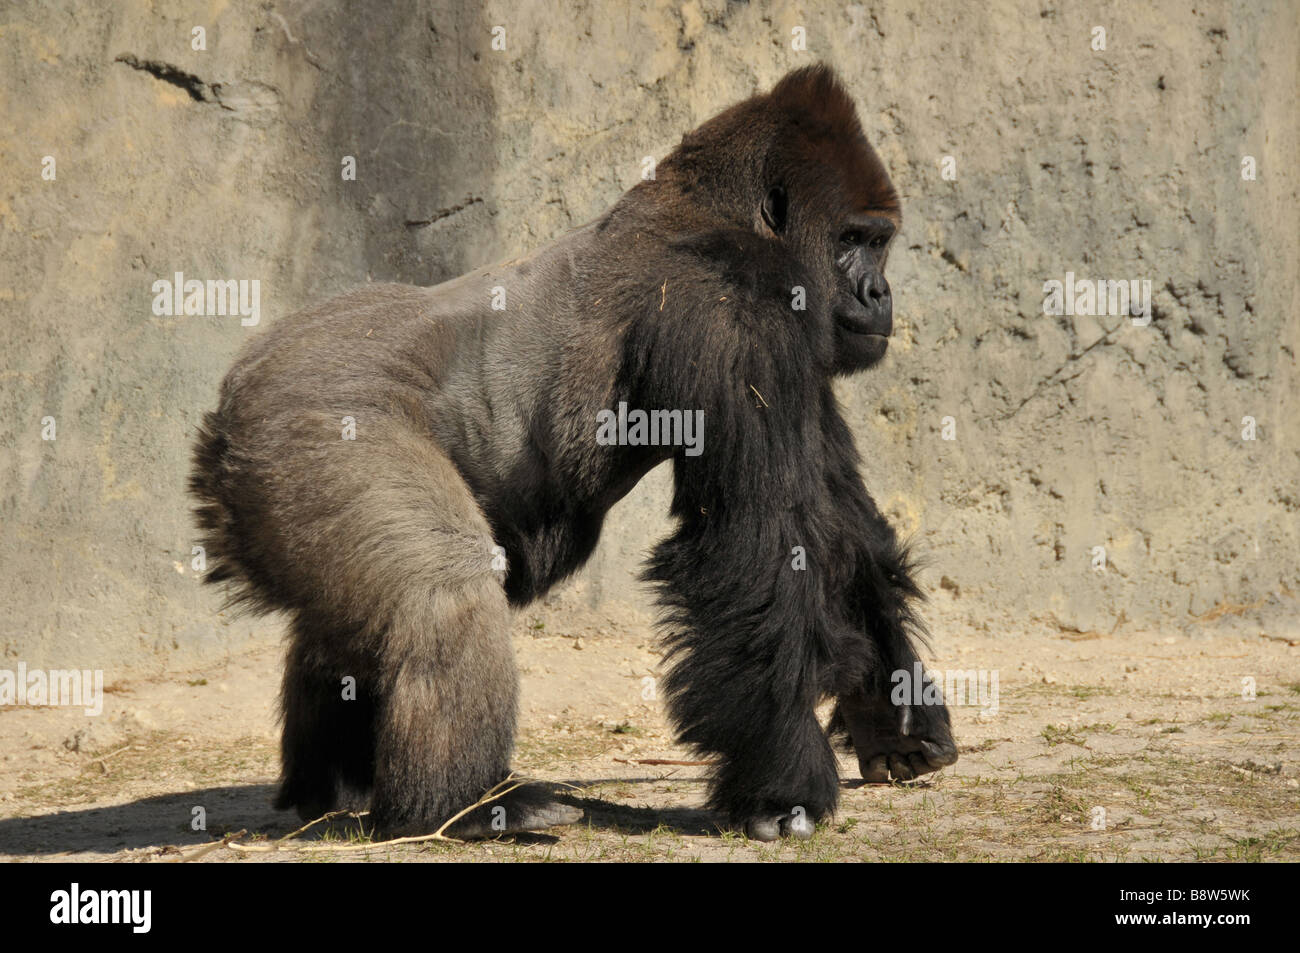 Gorila de las tierras bajas cautivo caminando. Foto de stock